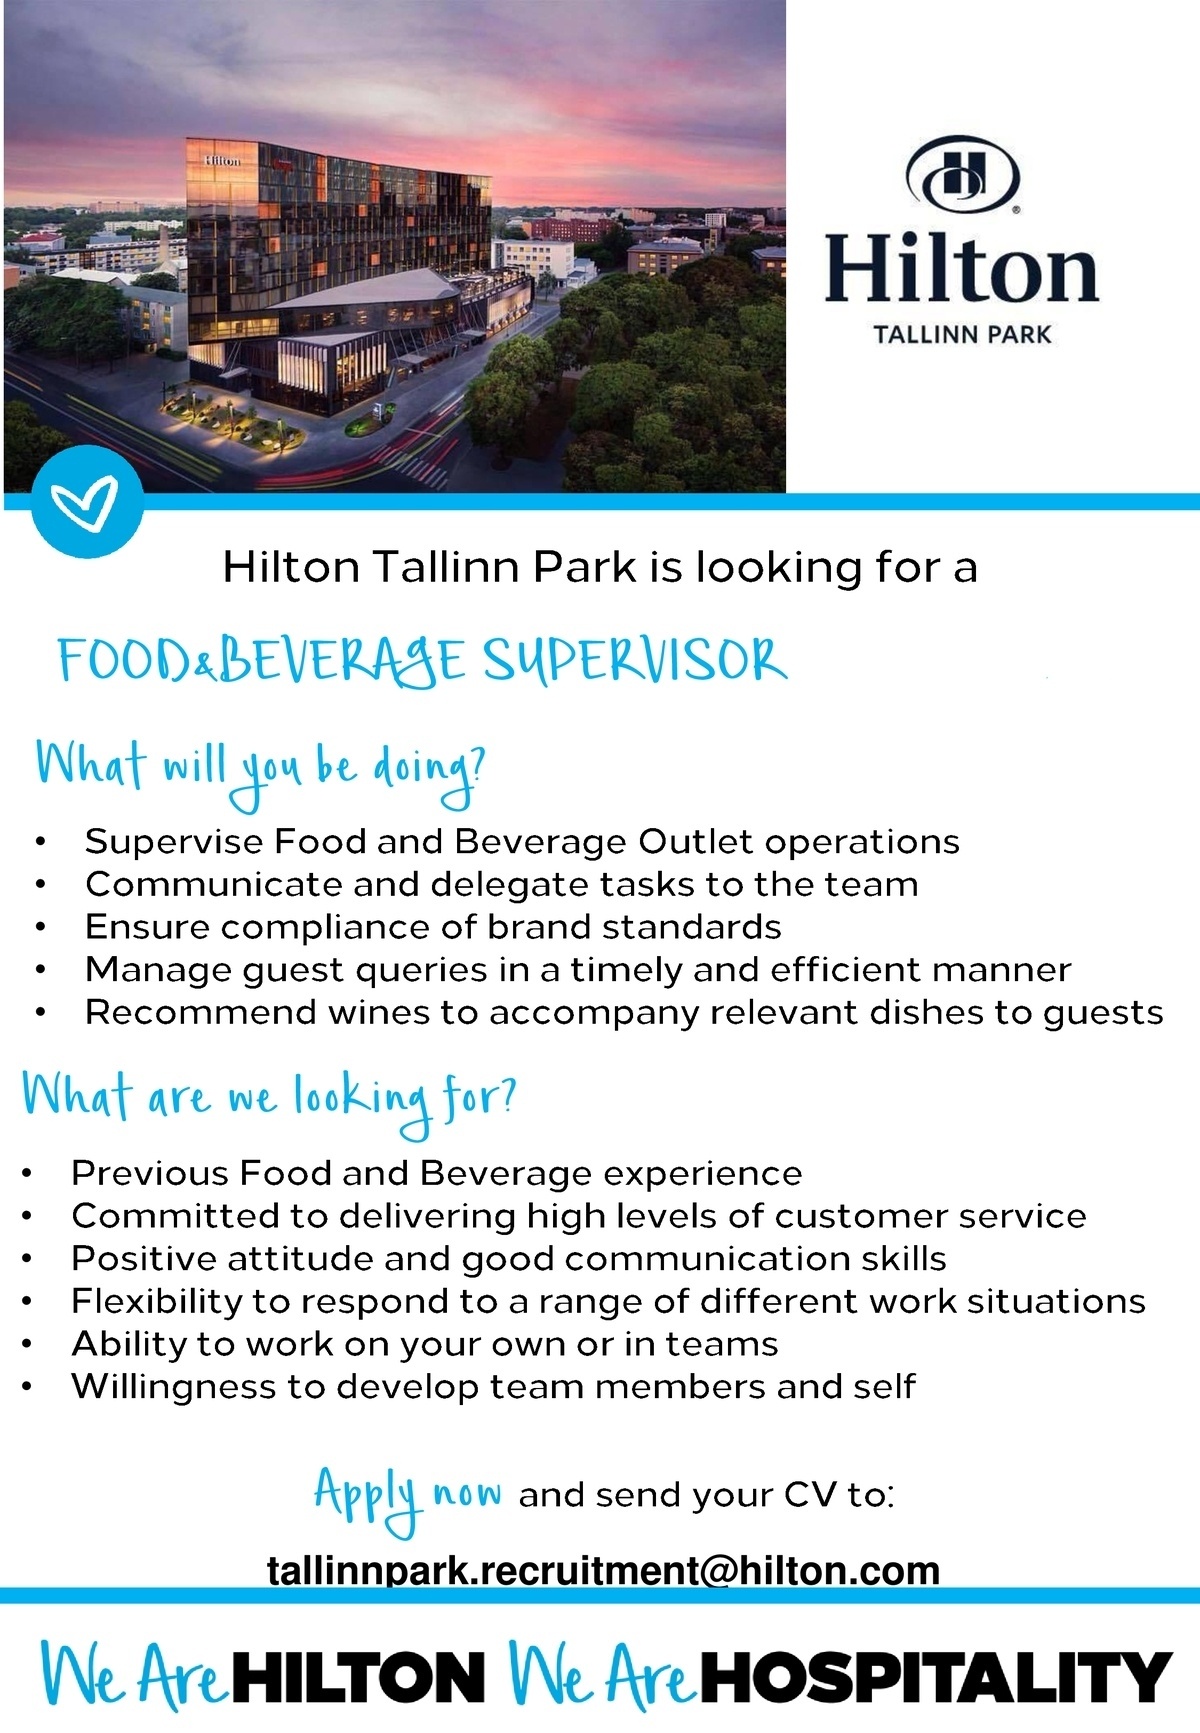 Hilton Tallinn Park Food & Beverage Supervisor